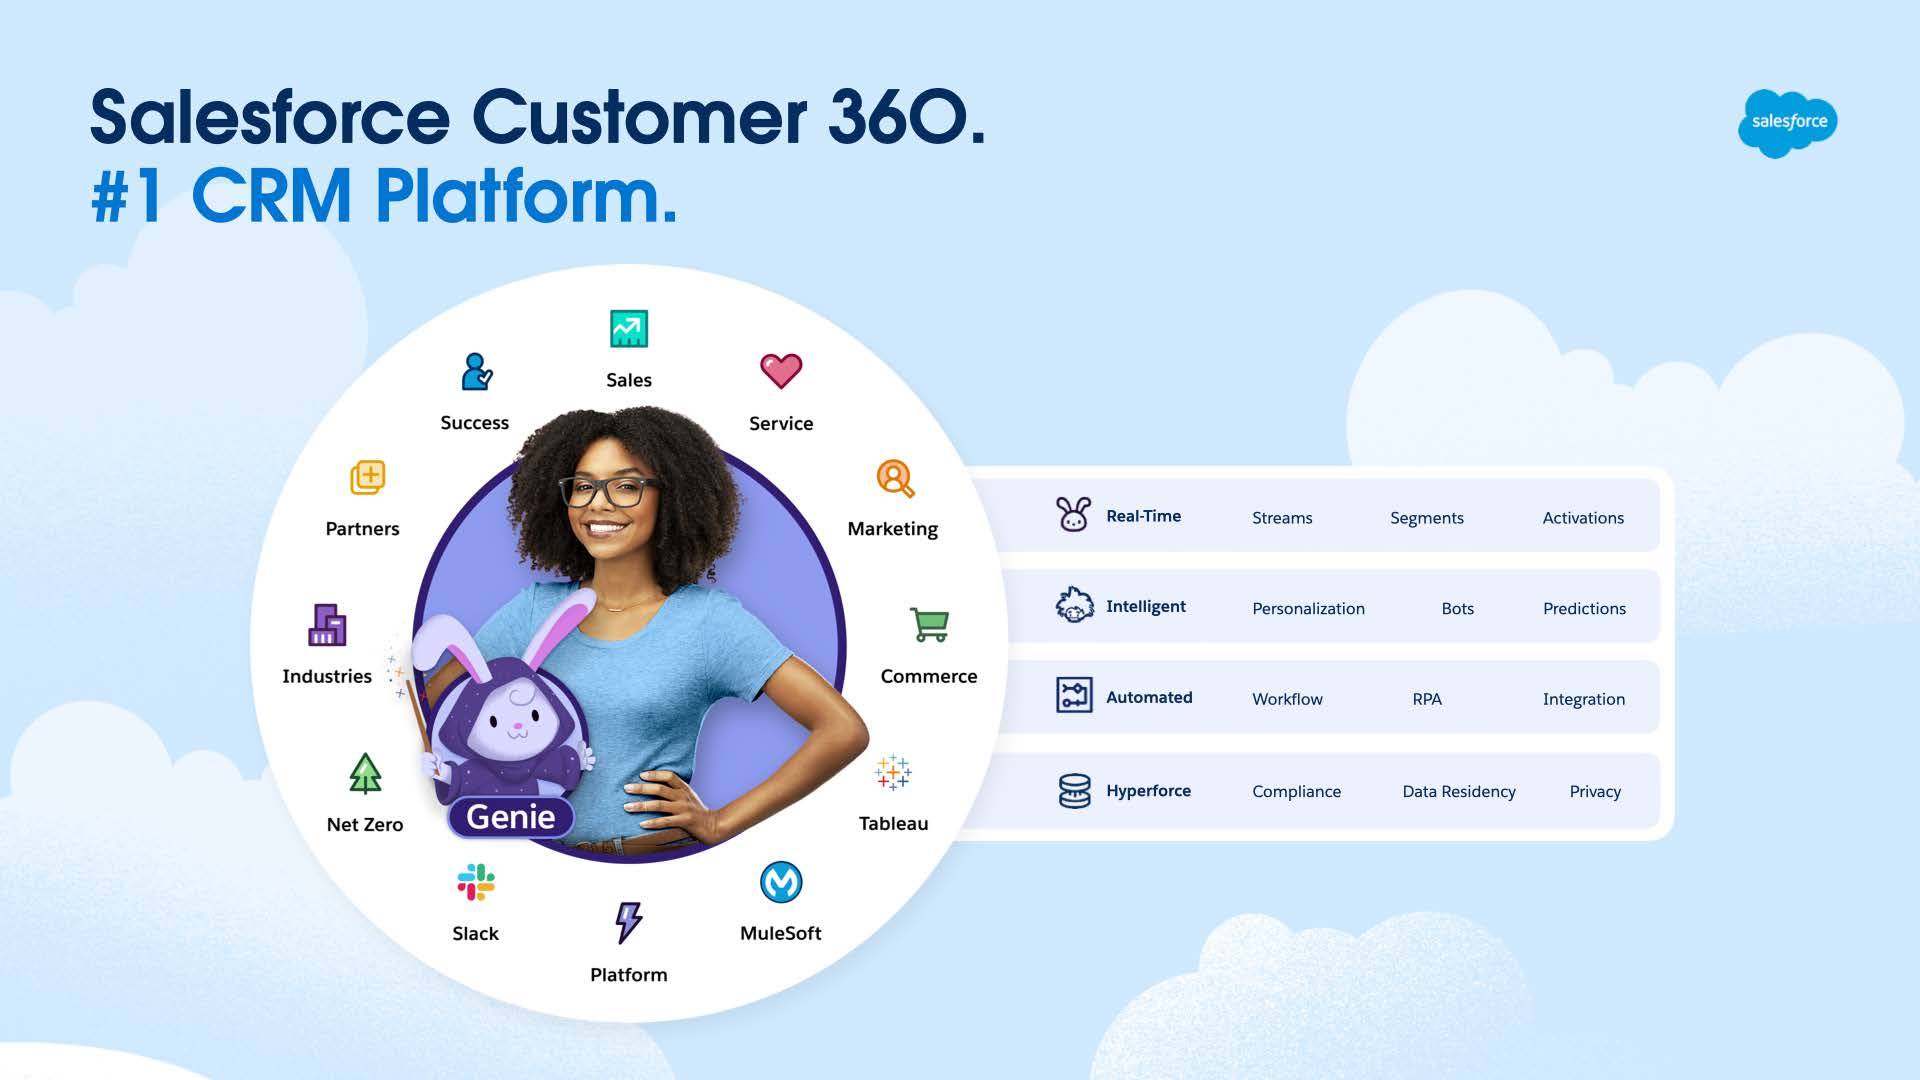  Salesforce Customer 360: Risparmia tempo. Risparmia denaro. Aumenta i profitti. In tempo reale, intelligente, automatizzato, Hyperforce. 